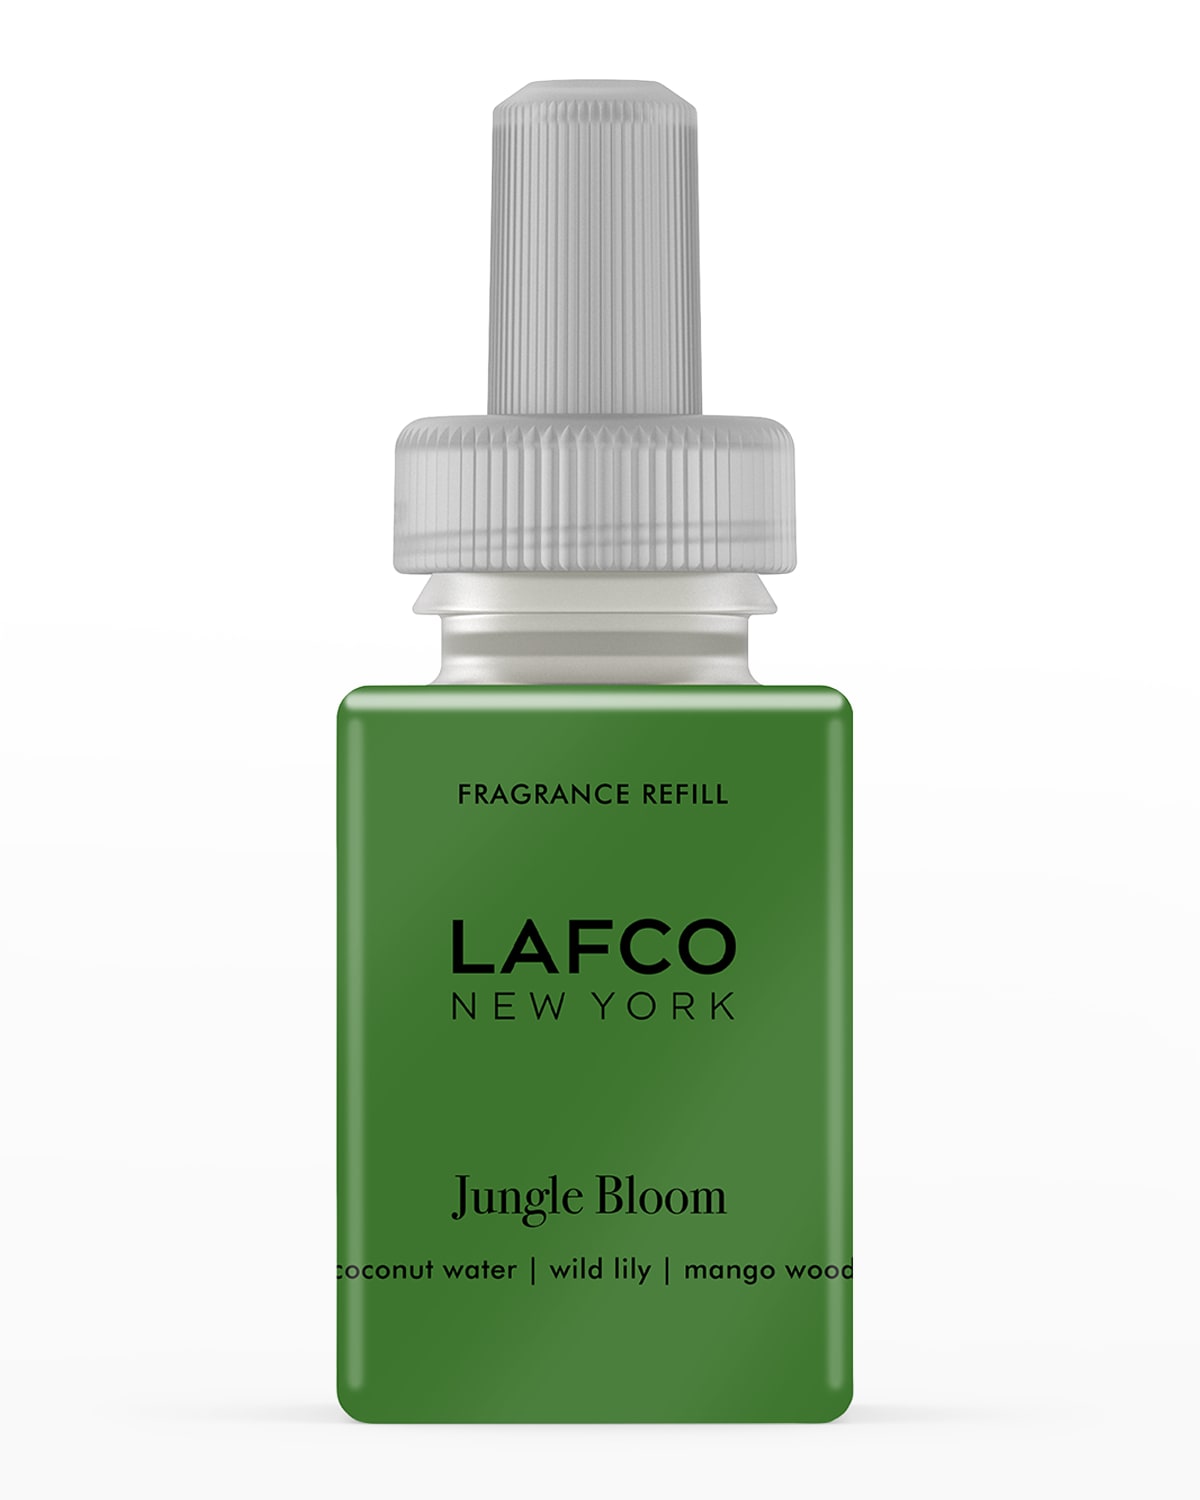 Lafco 0.33 Oz. Jungle Bloom Smart Diffuser Refill